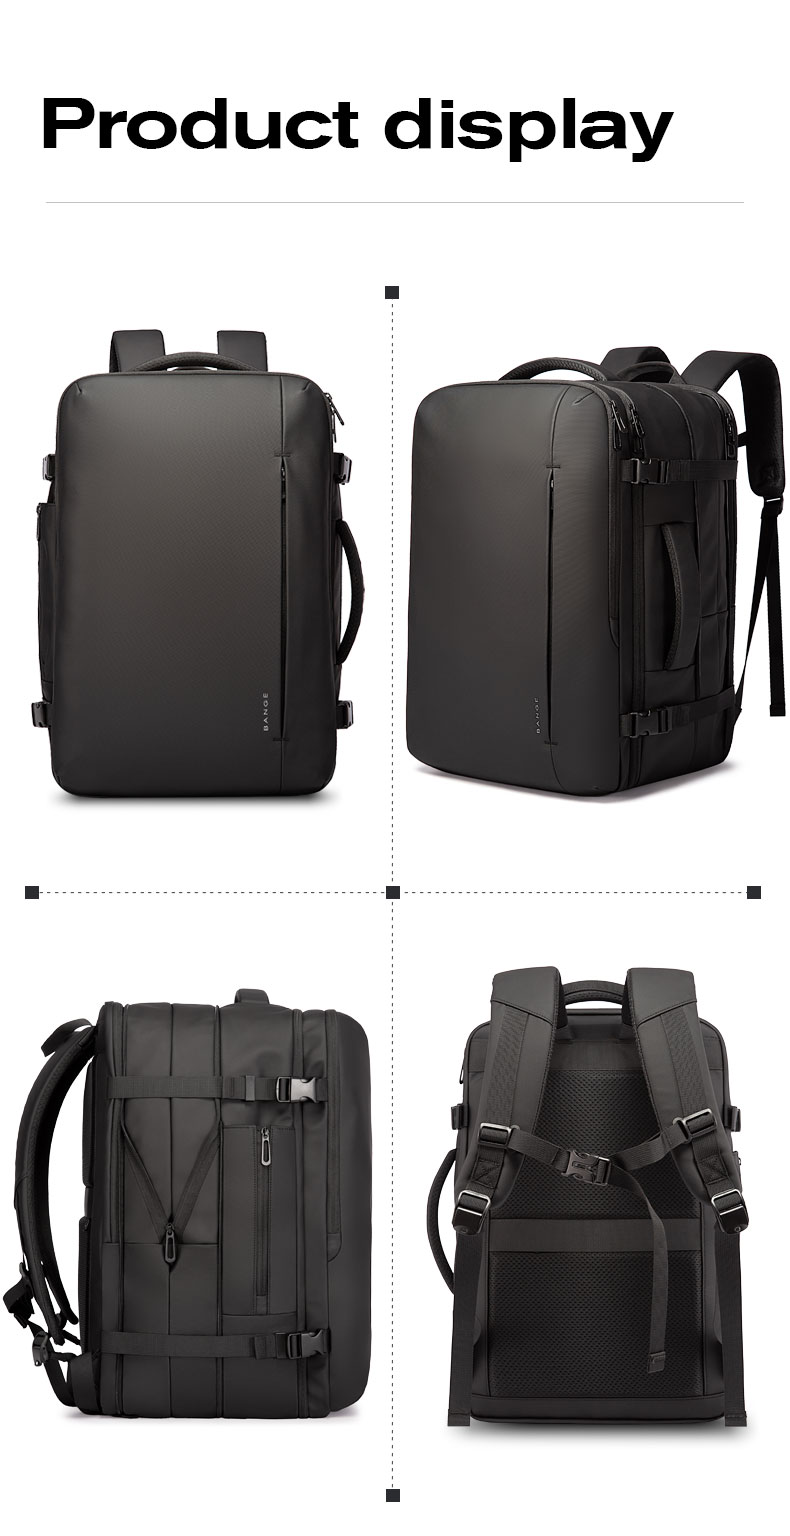 come4buy.com-Rozszerzalny plecak biznesowa torba podróżna czarna